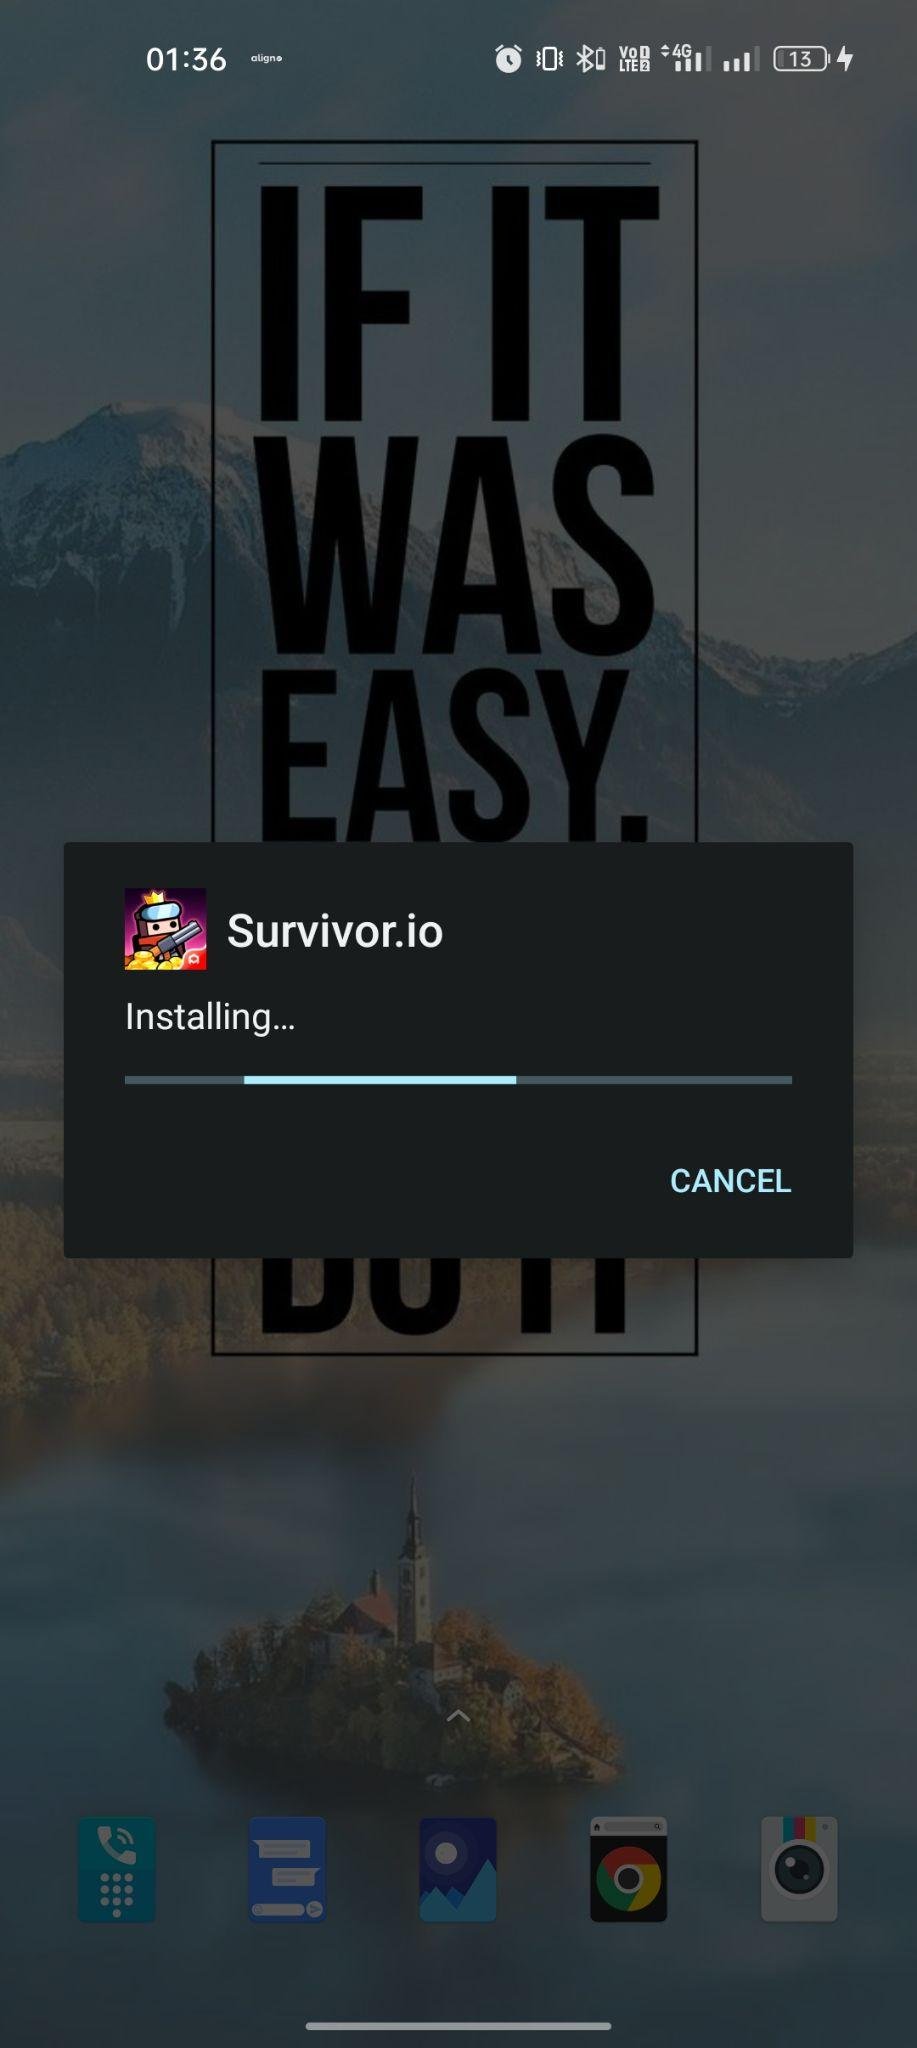 Survivor.io apk installing